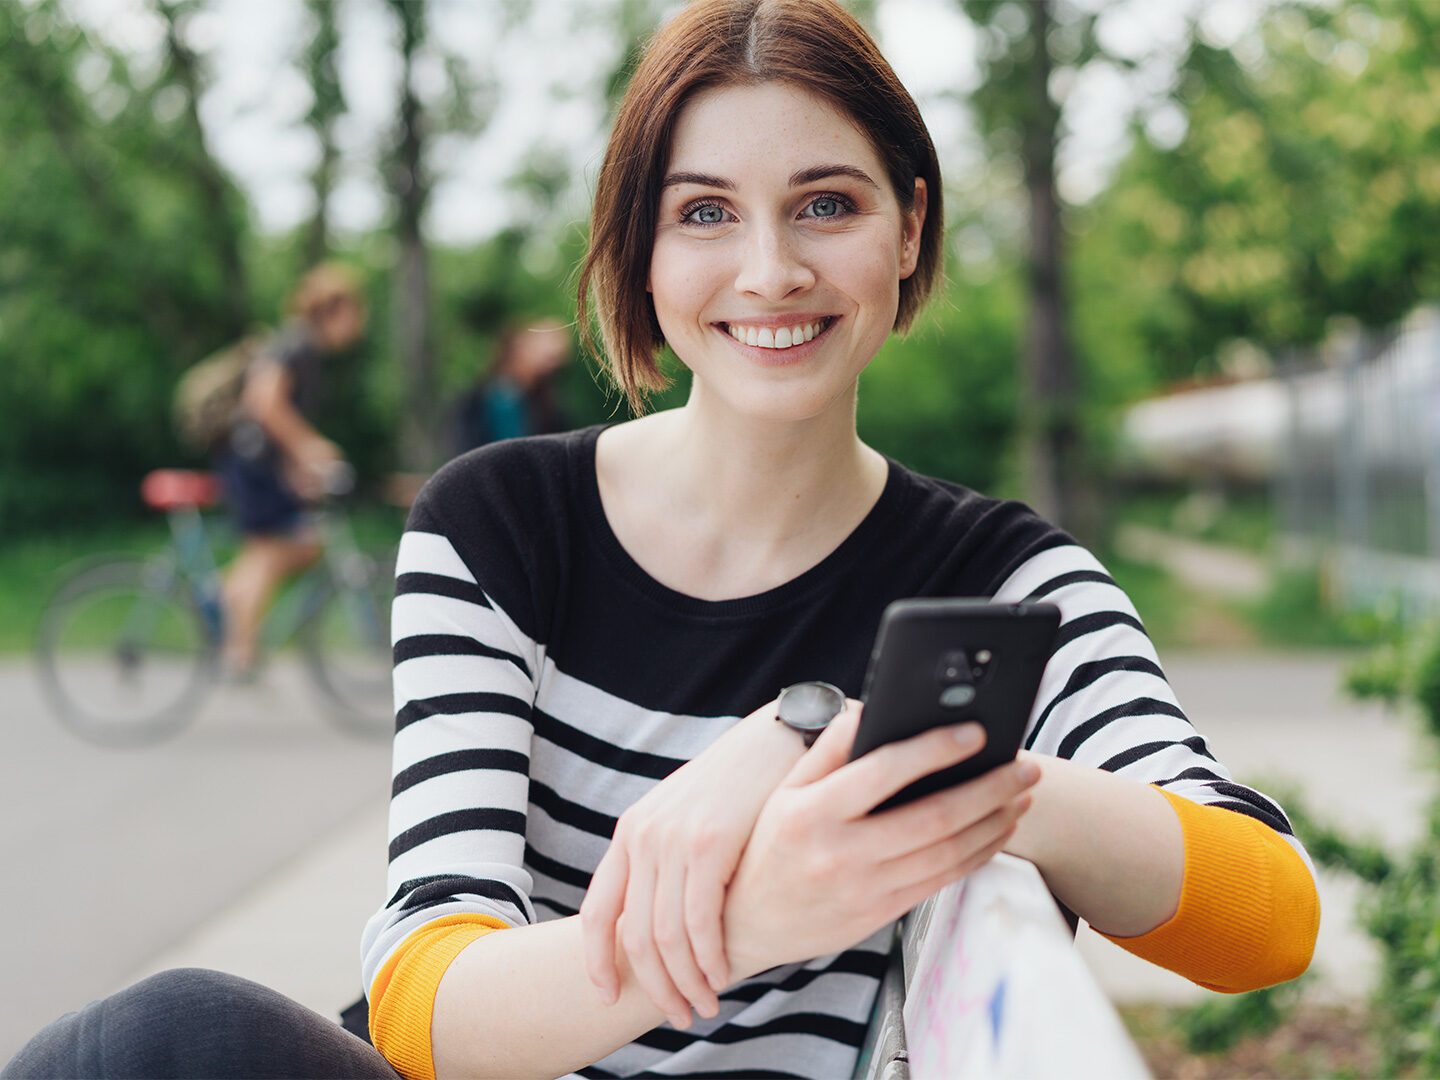 Junge Frau mit Smartphone in der Hand sitzt auf einer Bank auf einem Schulhof. Im Hintergrund sind Fahrradfahrer zu sehen.